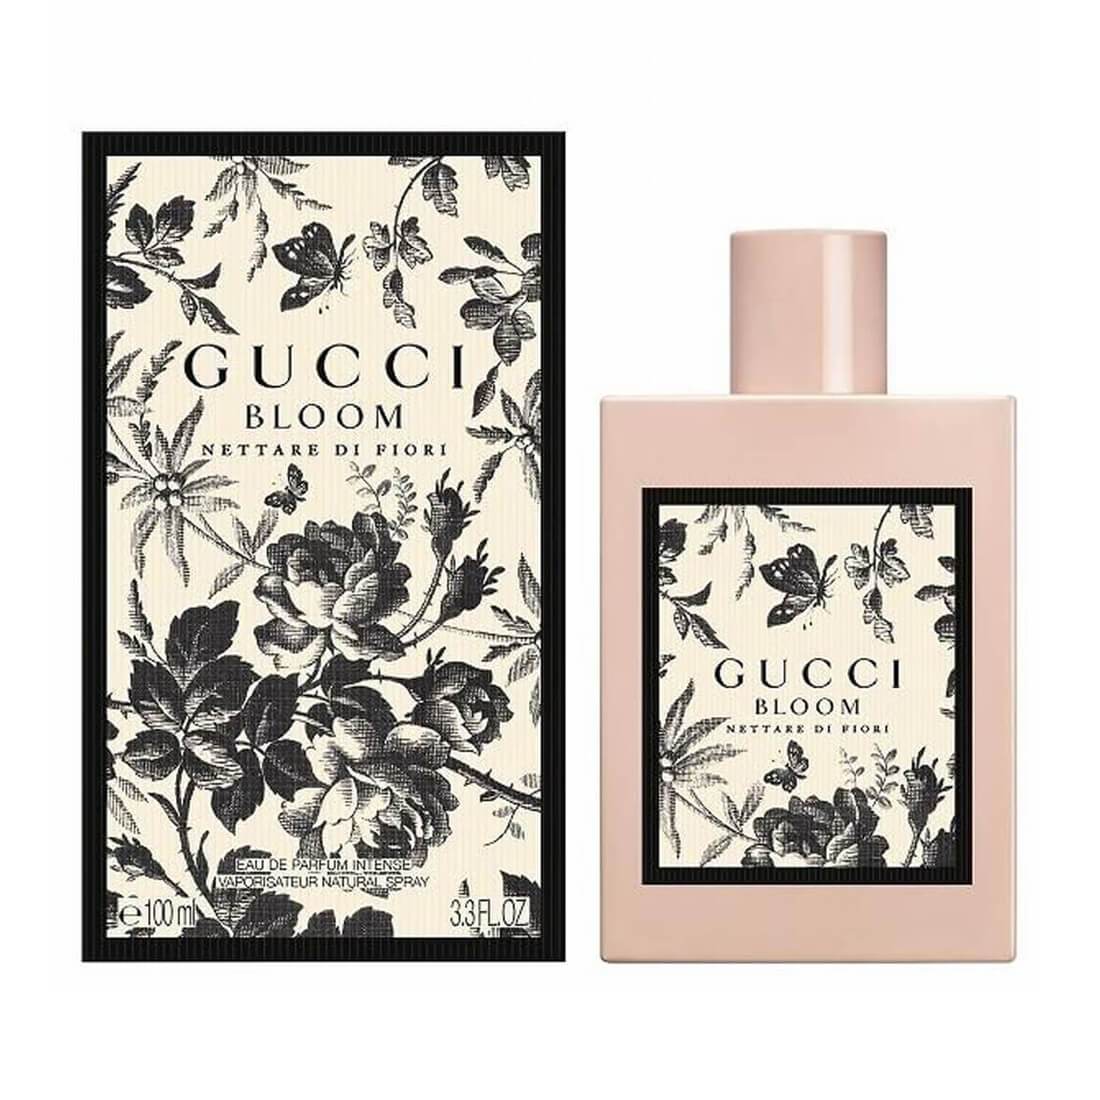 Gucci Bloom Nettare Di Fiori Perfume EDT - 100ml